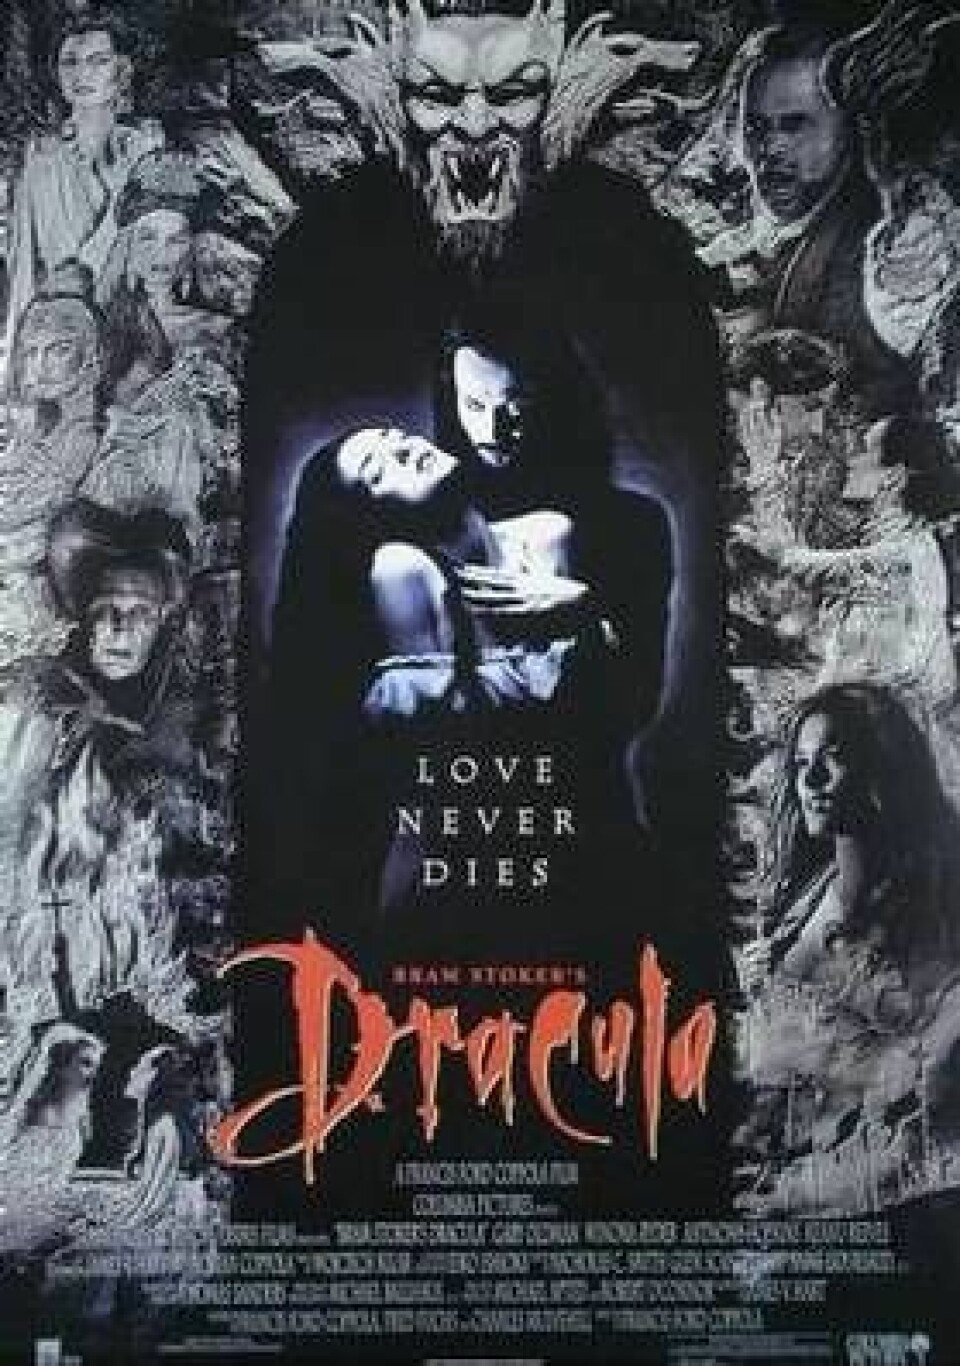 Filmplakat for Bram Stoker's Dracula (1992). (Plakat: Sony Pictures)